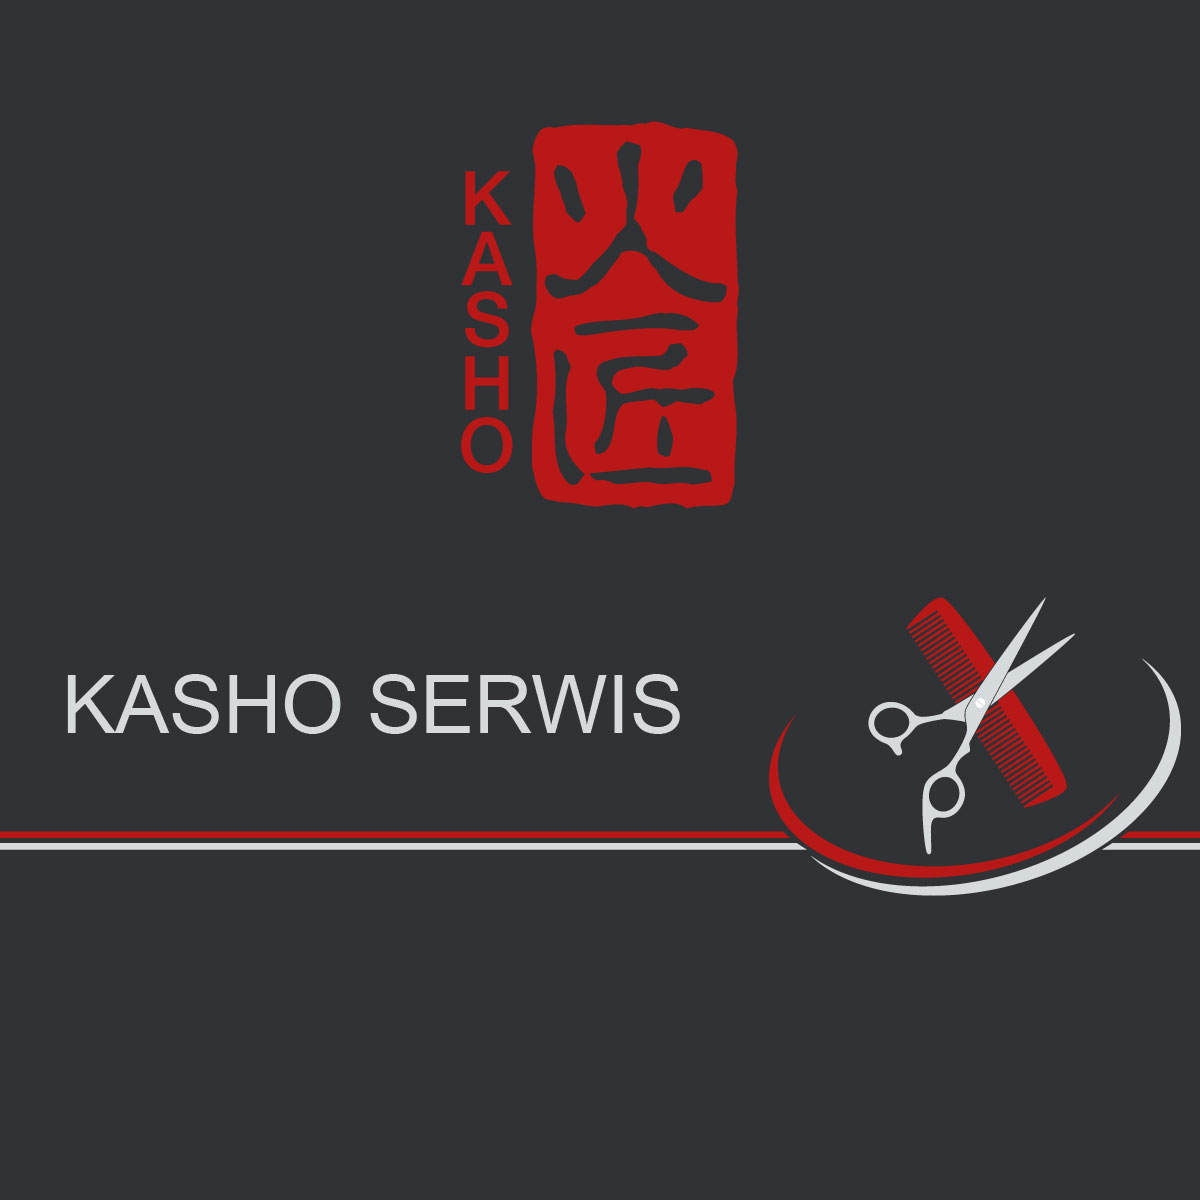 Serwis Kasho - zawsze niezawodny